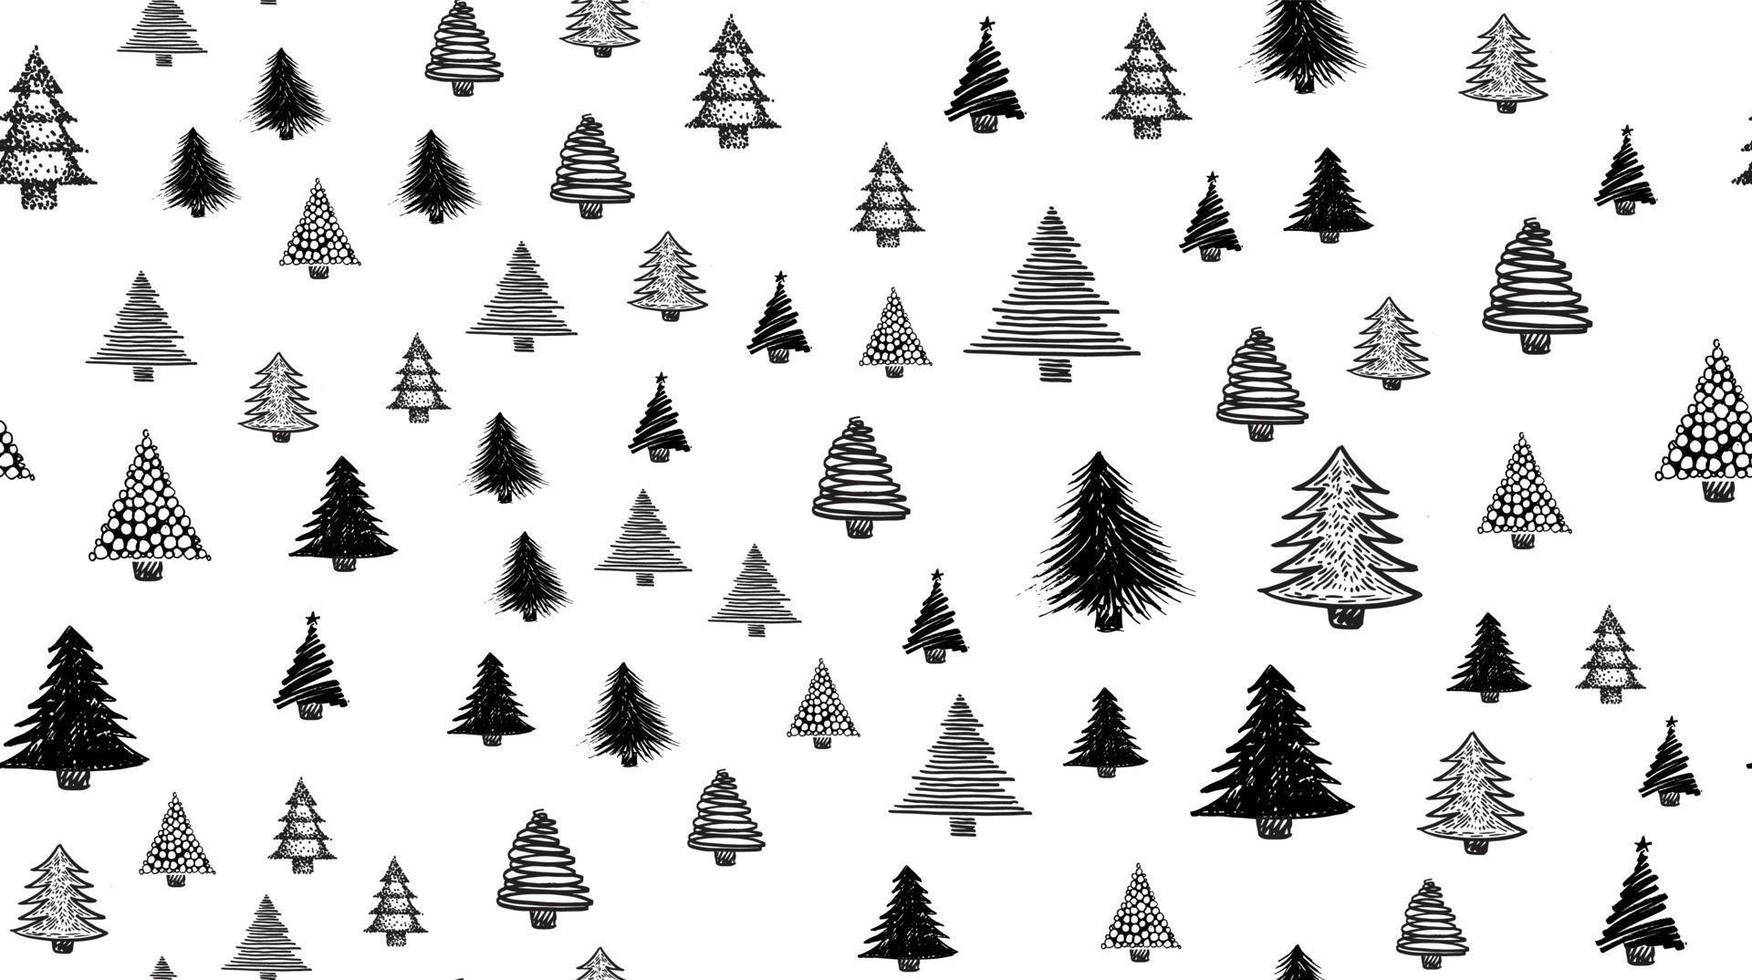 jul träd uppsättning, hand ritade. vektor illustration.